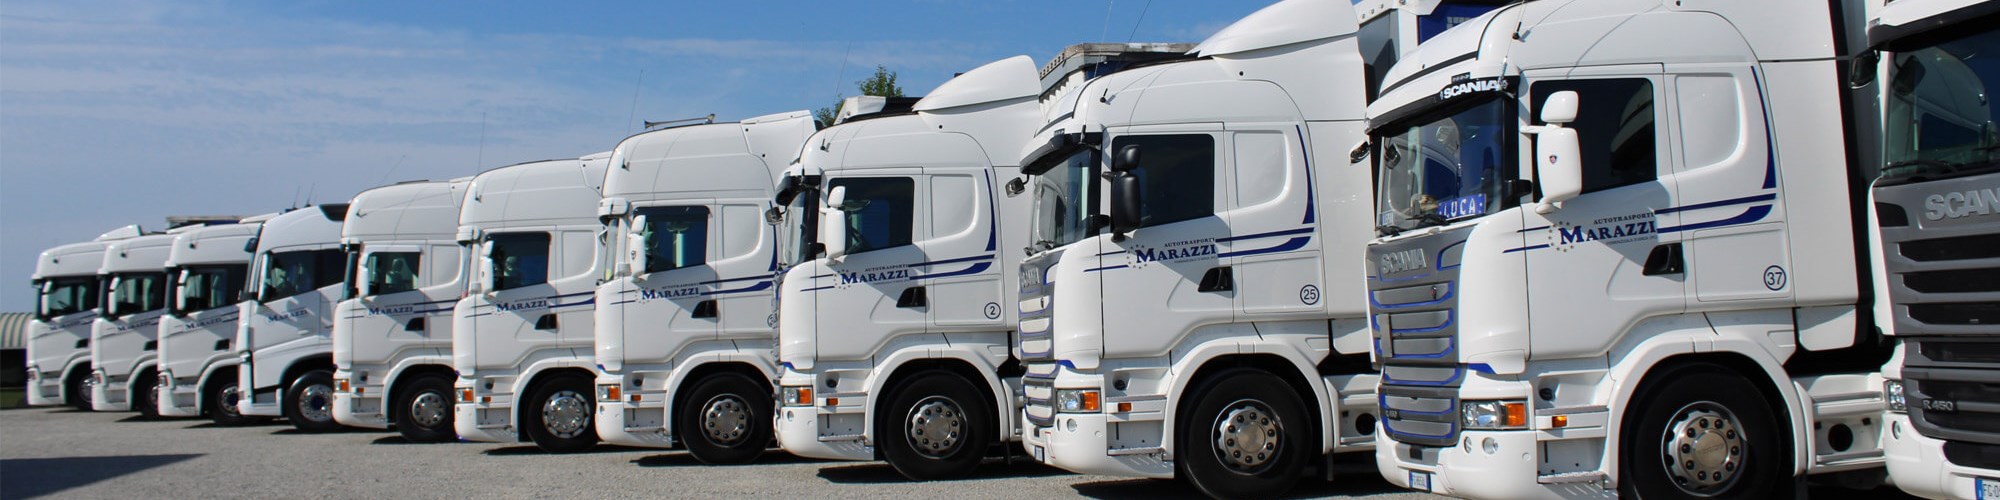 Servizi trasporto merci su strada Marazzi Autotrasporti